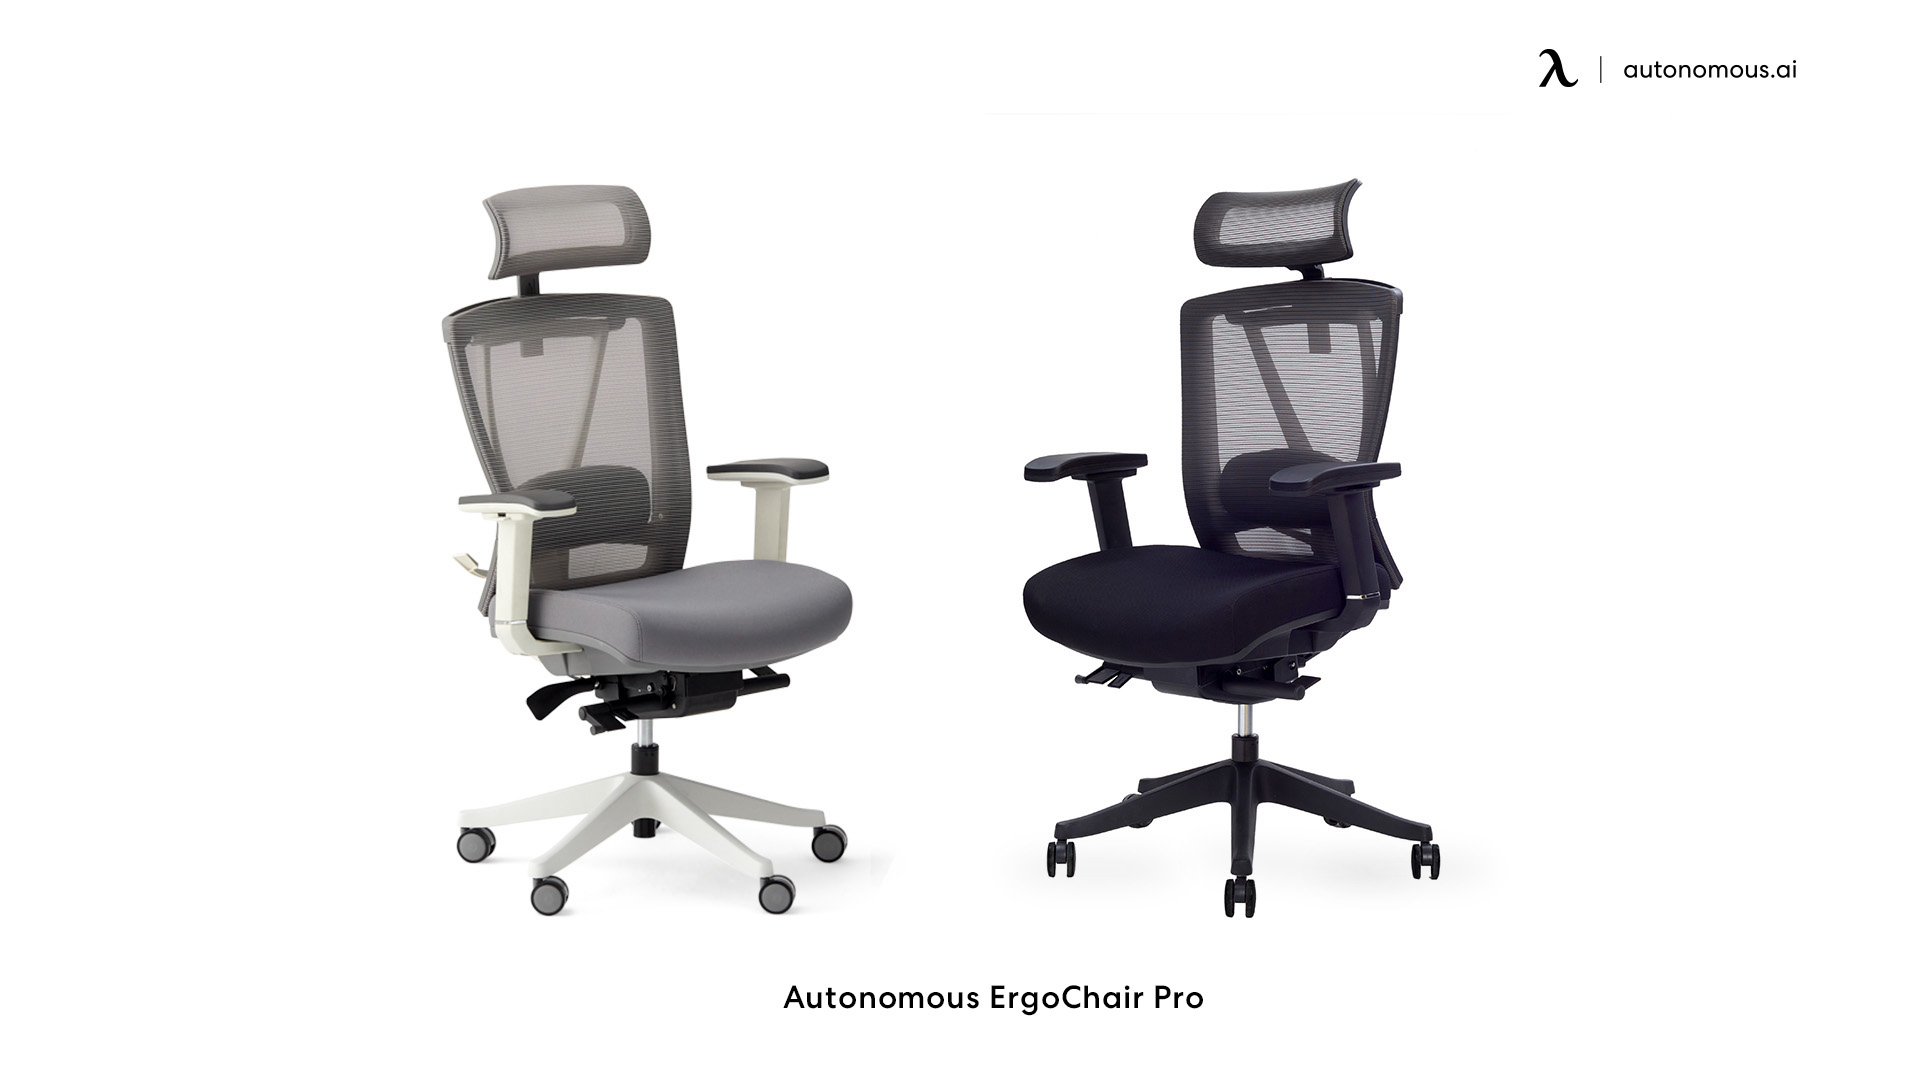 ErgoChair Pro cool office chair